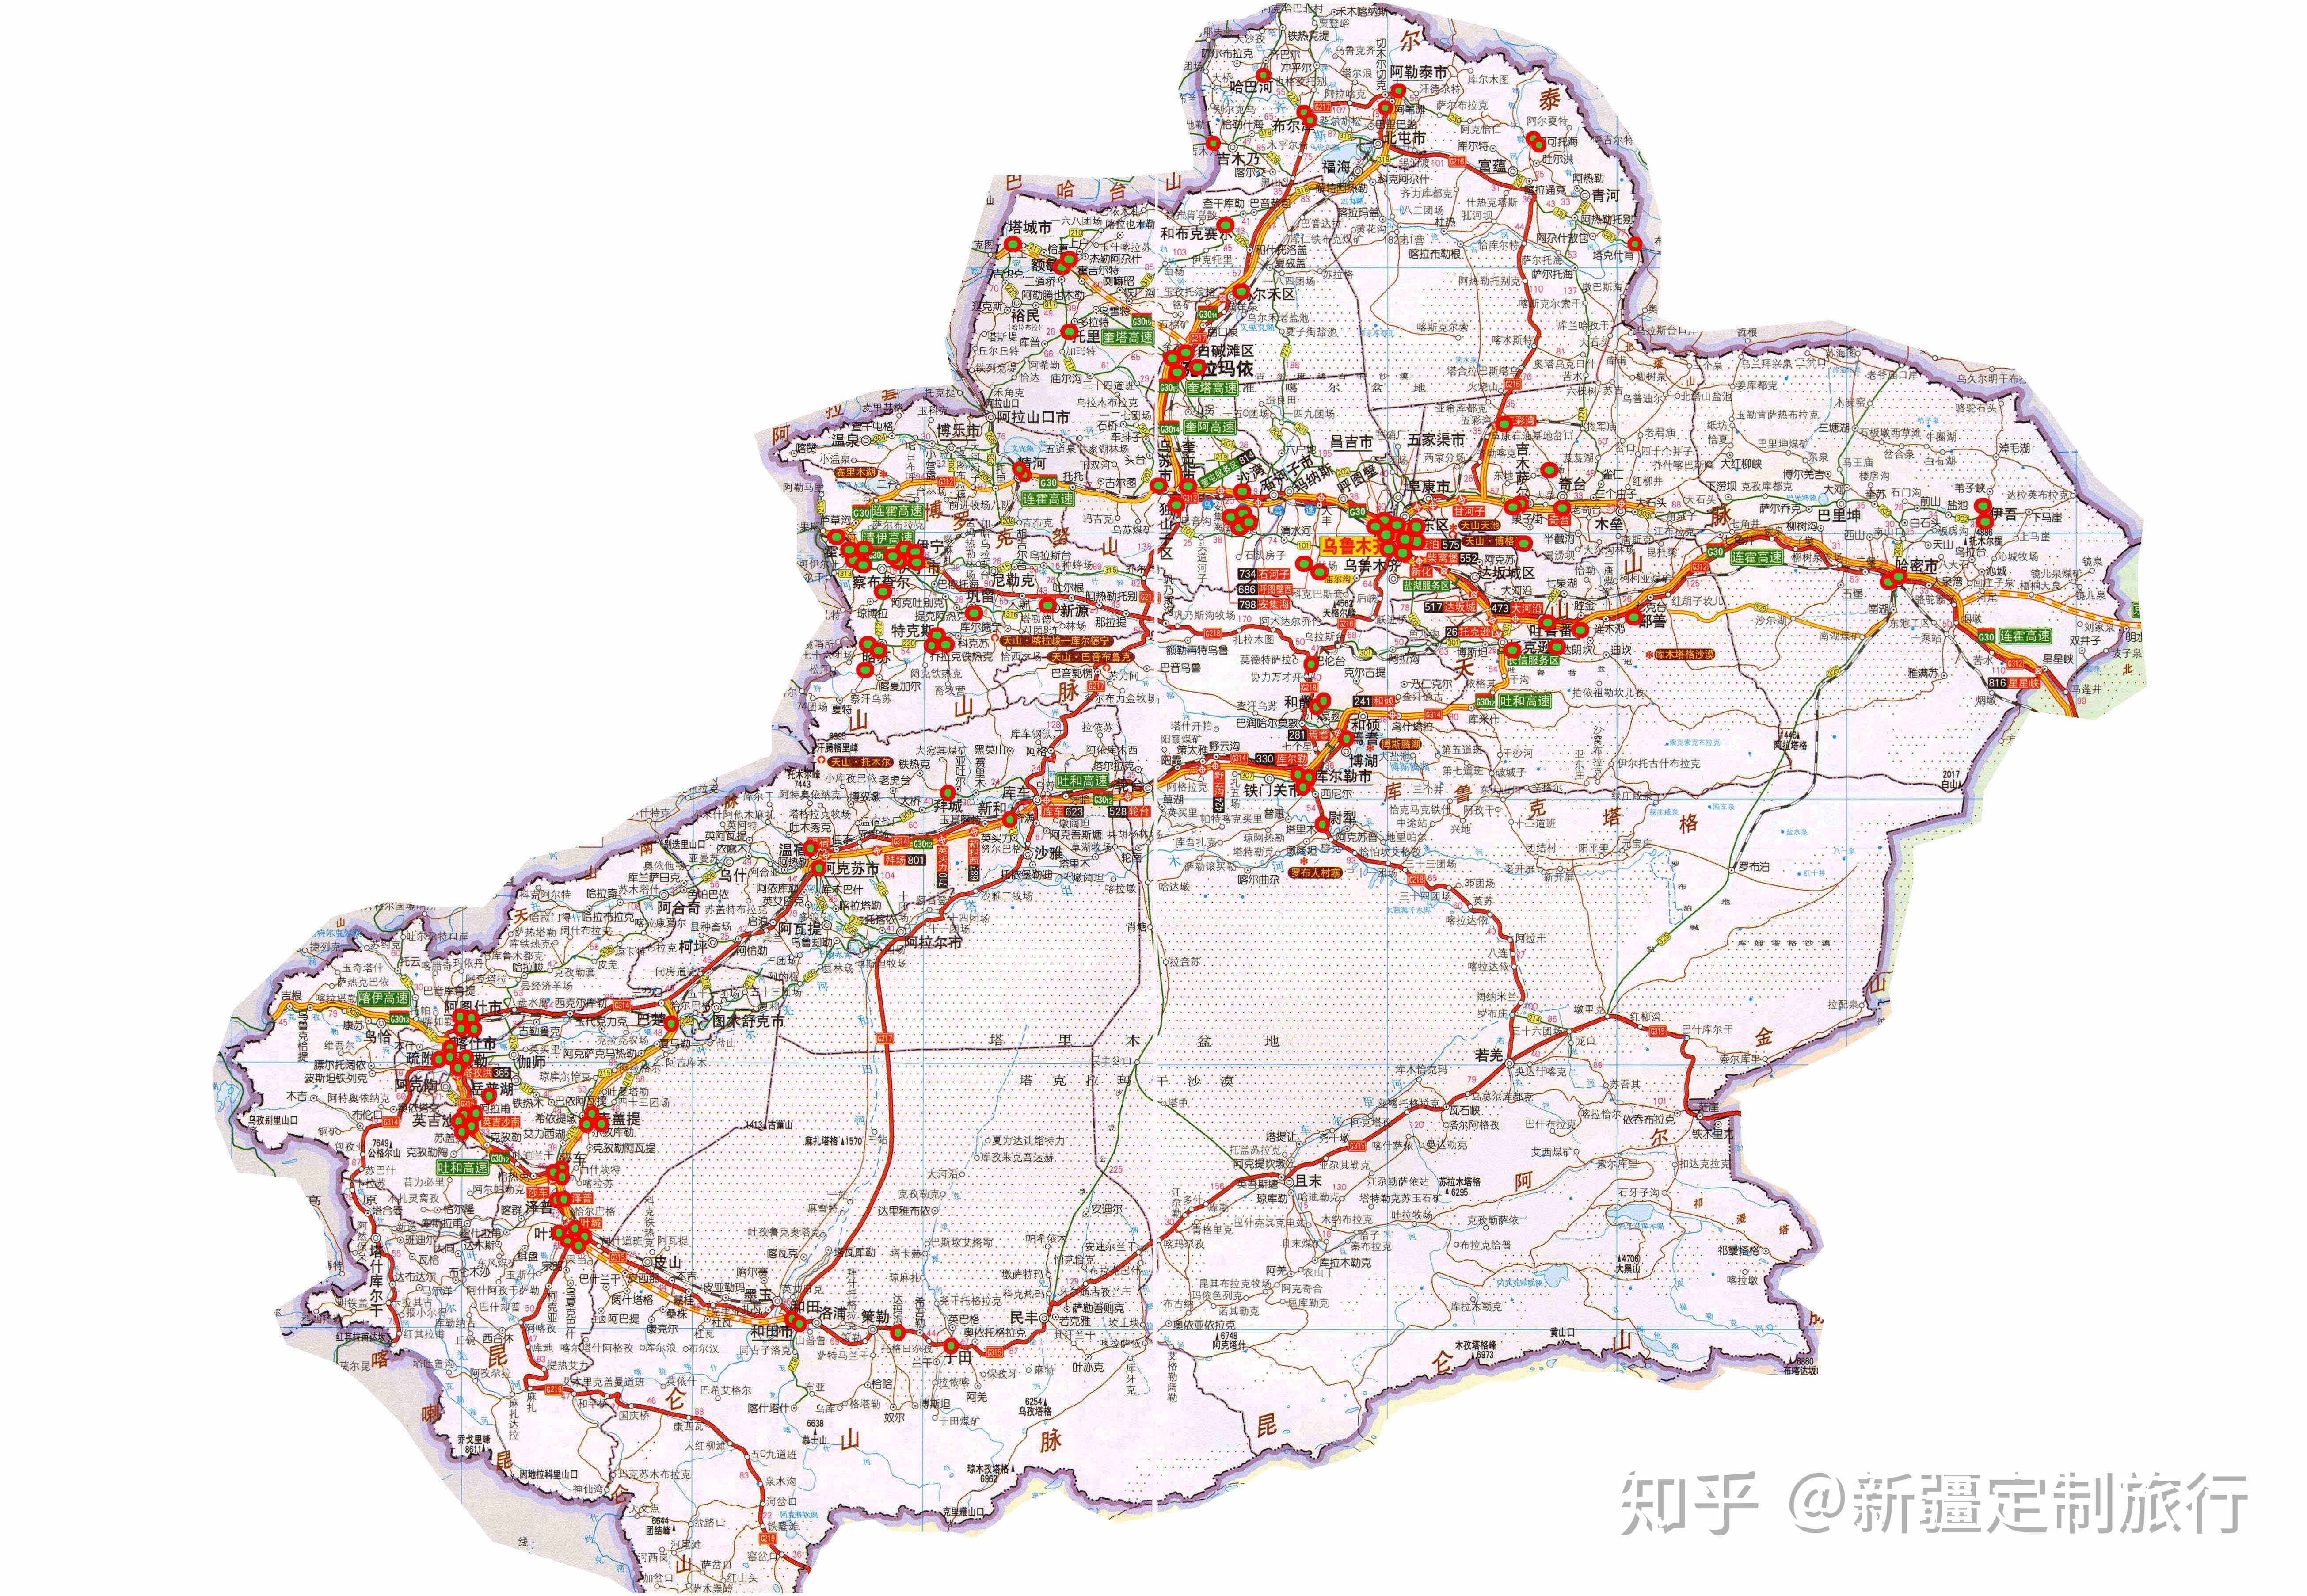 新疆103省道全程线路图图片